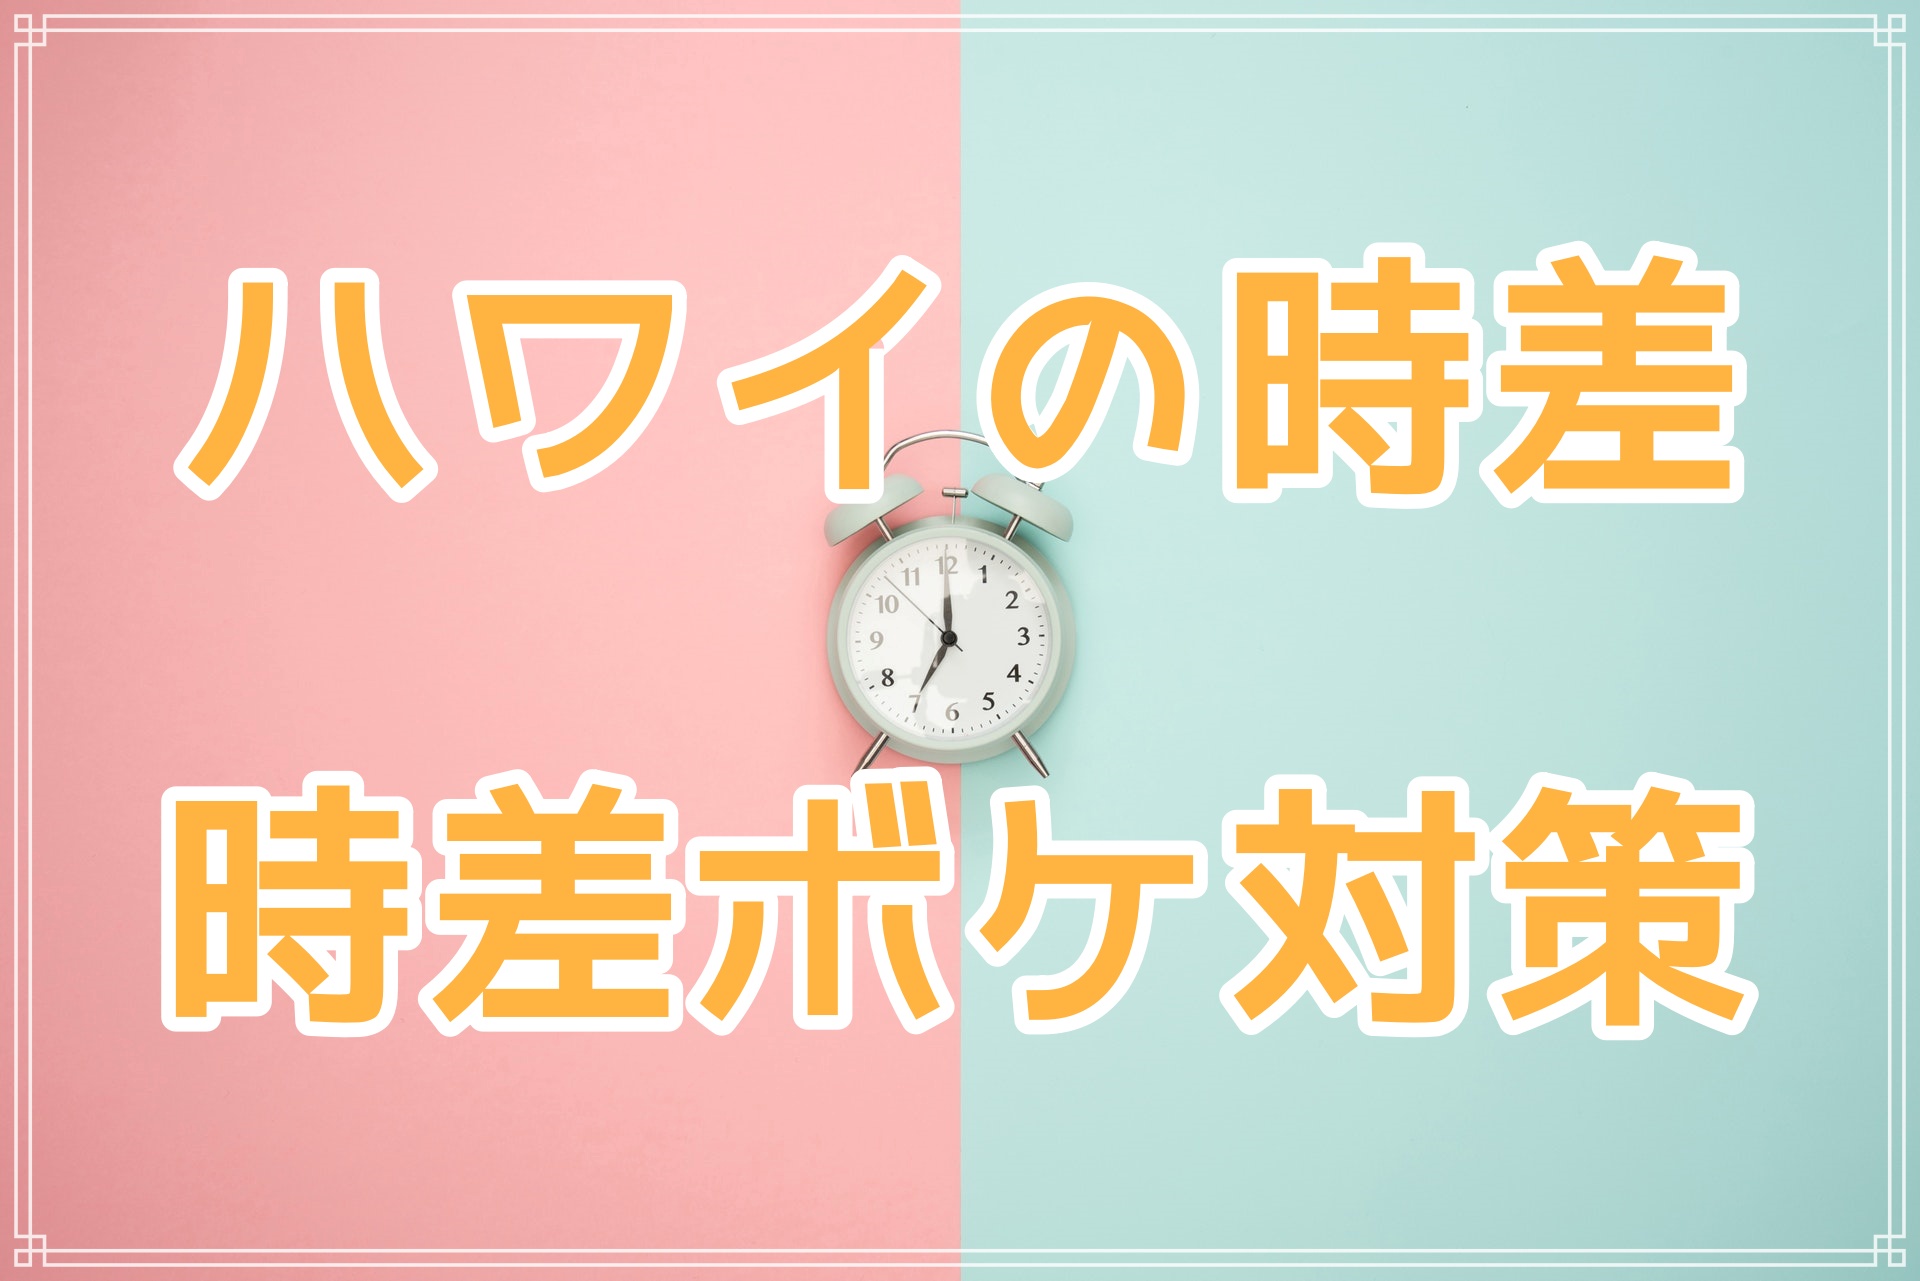 ハワイと日本の時差をわかりやすく 時差ボケ対策も紹介 ハナスタイル